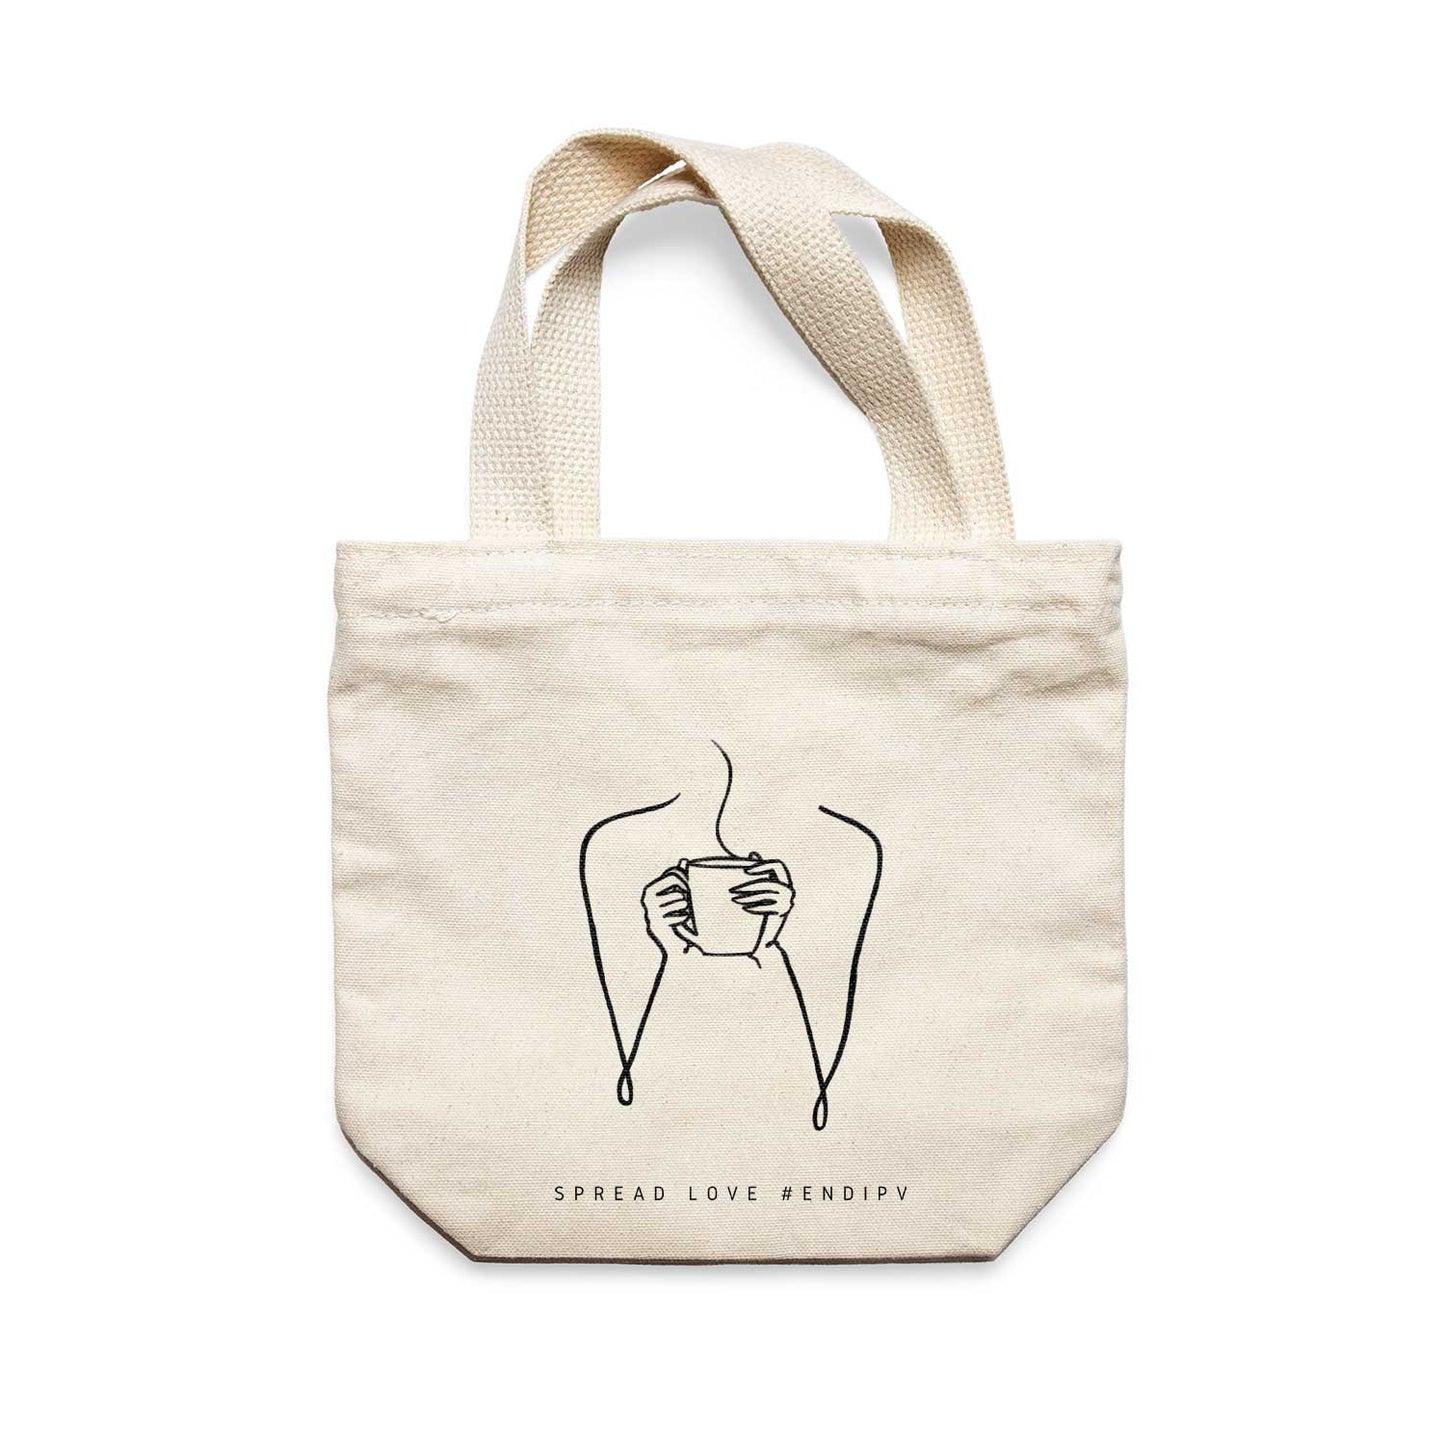 תיק צד לנשים וגברים מבד 100% כותנה טבעית בעיצוב One Line - Coffee time Tote Bag מציור מקורי של גאיה